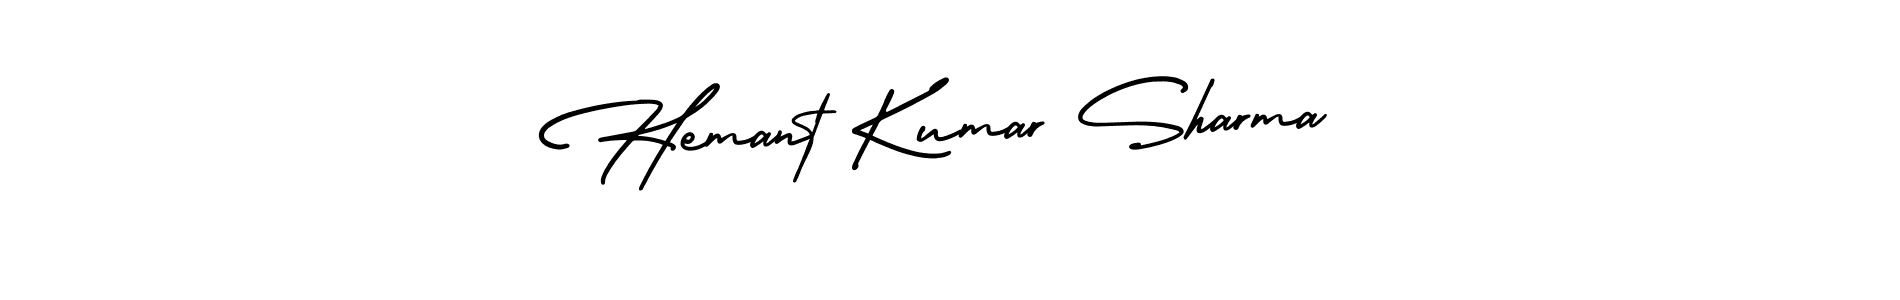 Hemant Kumar Sharma stylish signature style. Best Handwritten Sign (AmerikaSignatureDemo-Regular) for my name. Handwritten Signature Collection Ideas for my name Hemant Kumar Sharma. Hemant Kumar Sharma signature style 3 images and pictures png